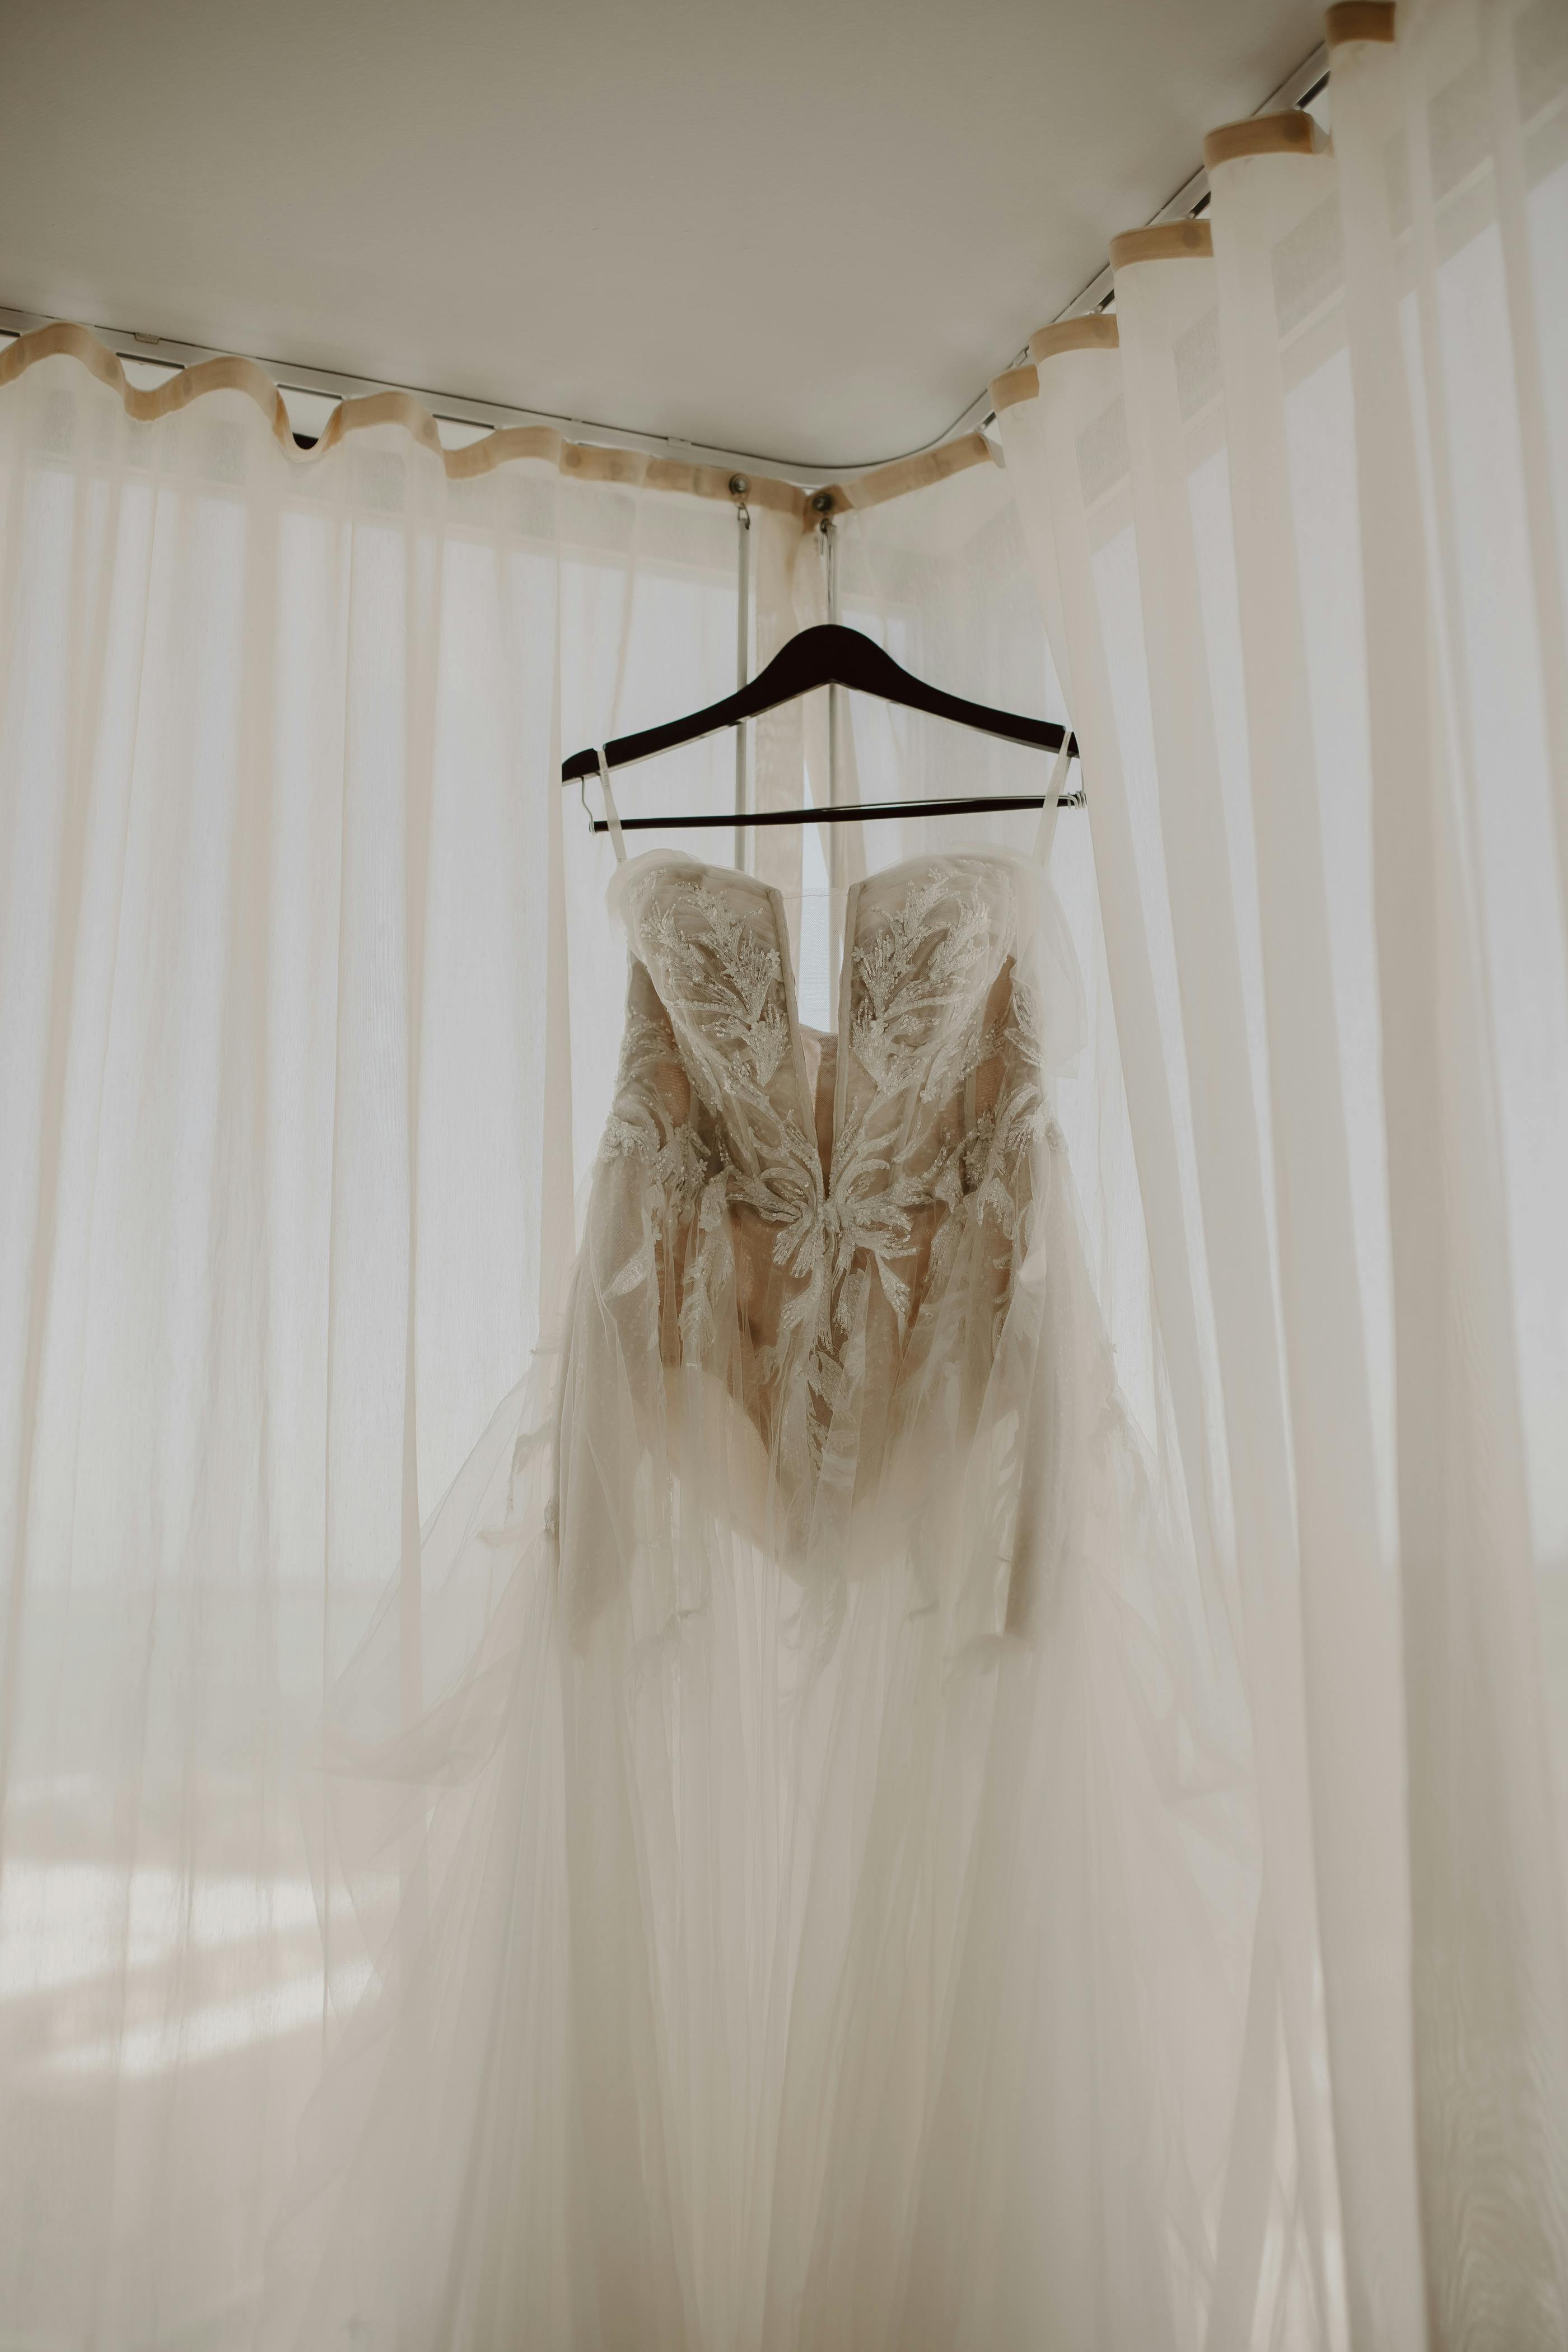 À titre d'illustration seulement. Robe de mariée sur un cintre | Source : Pexels